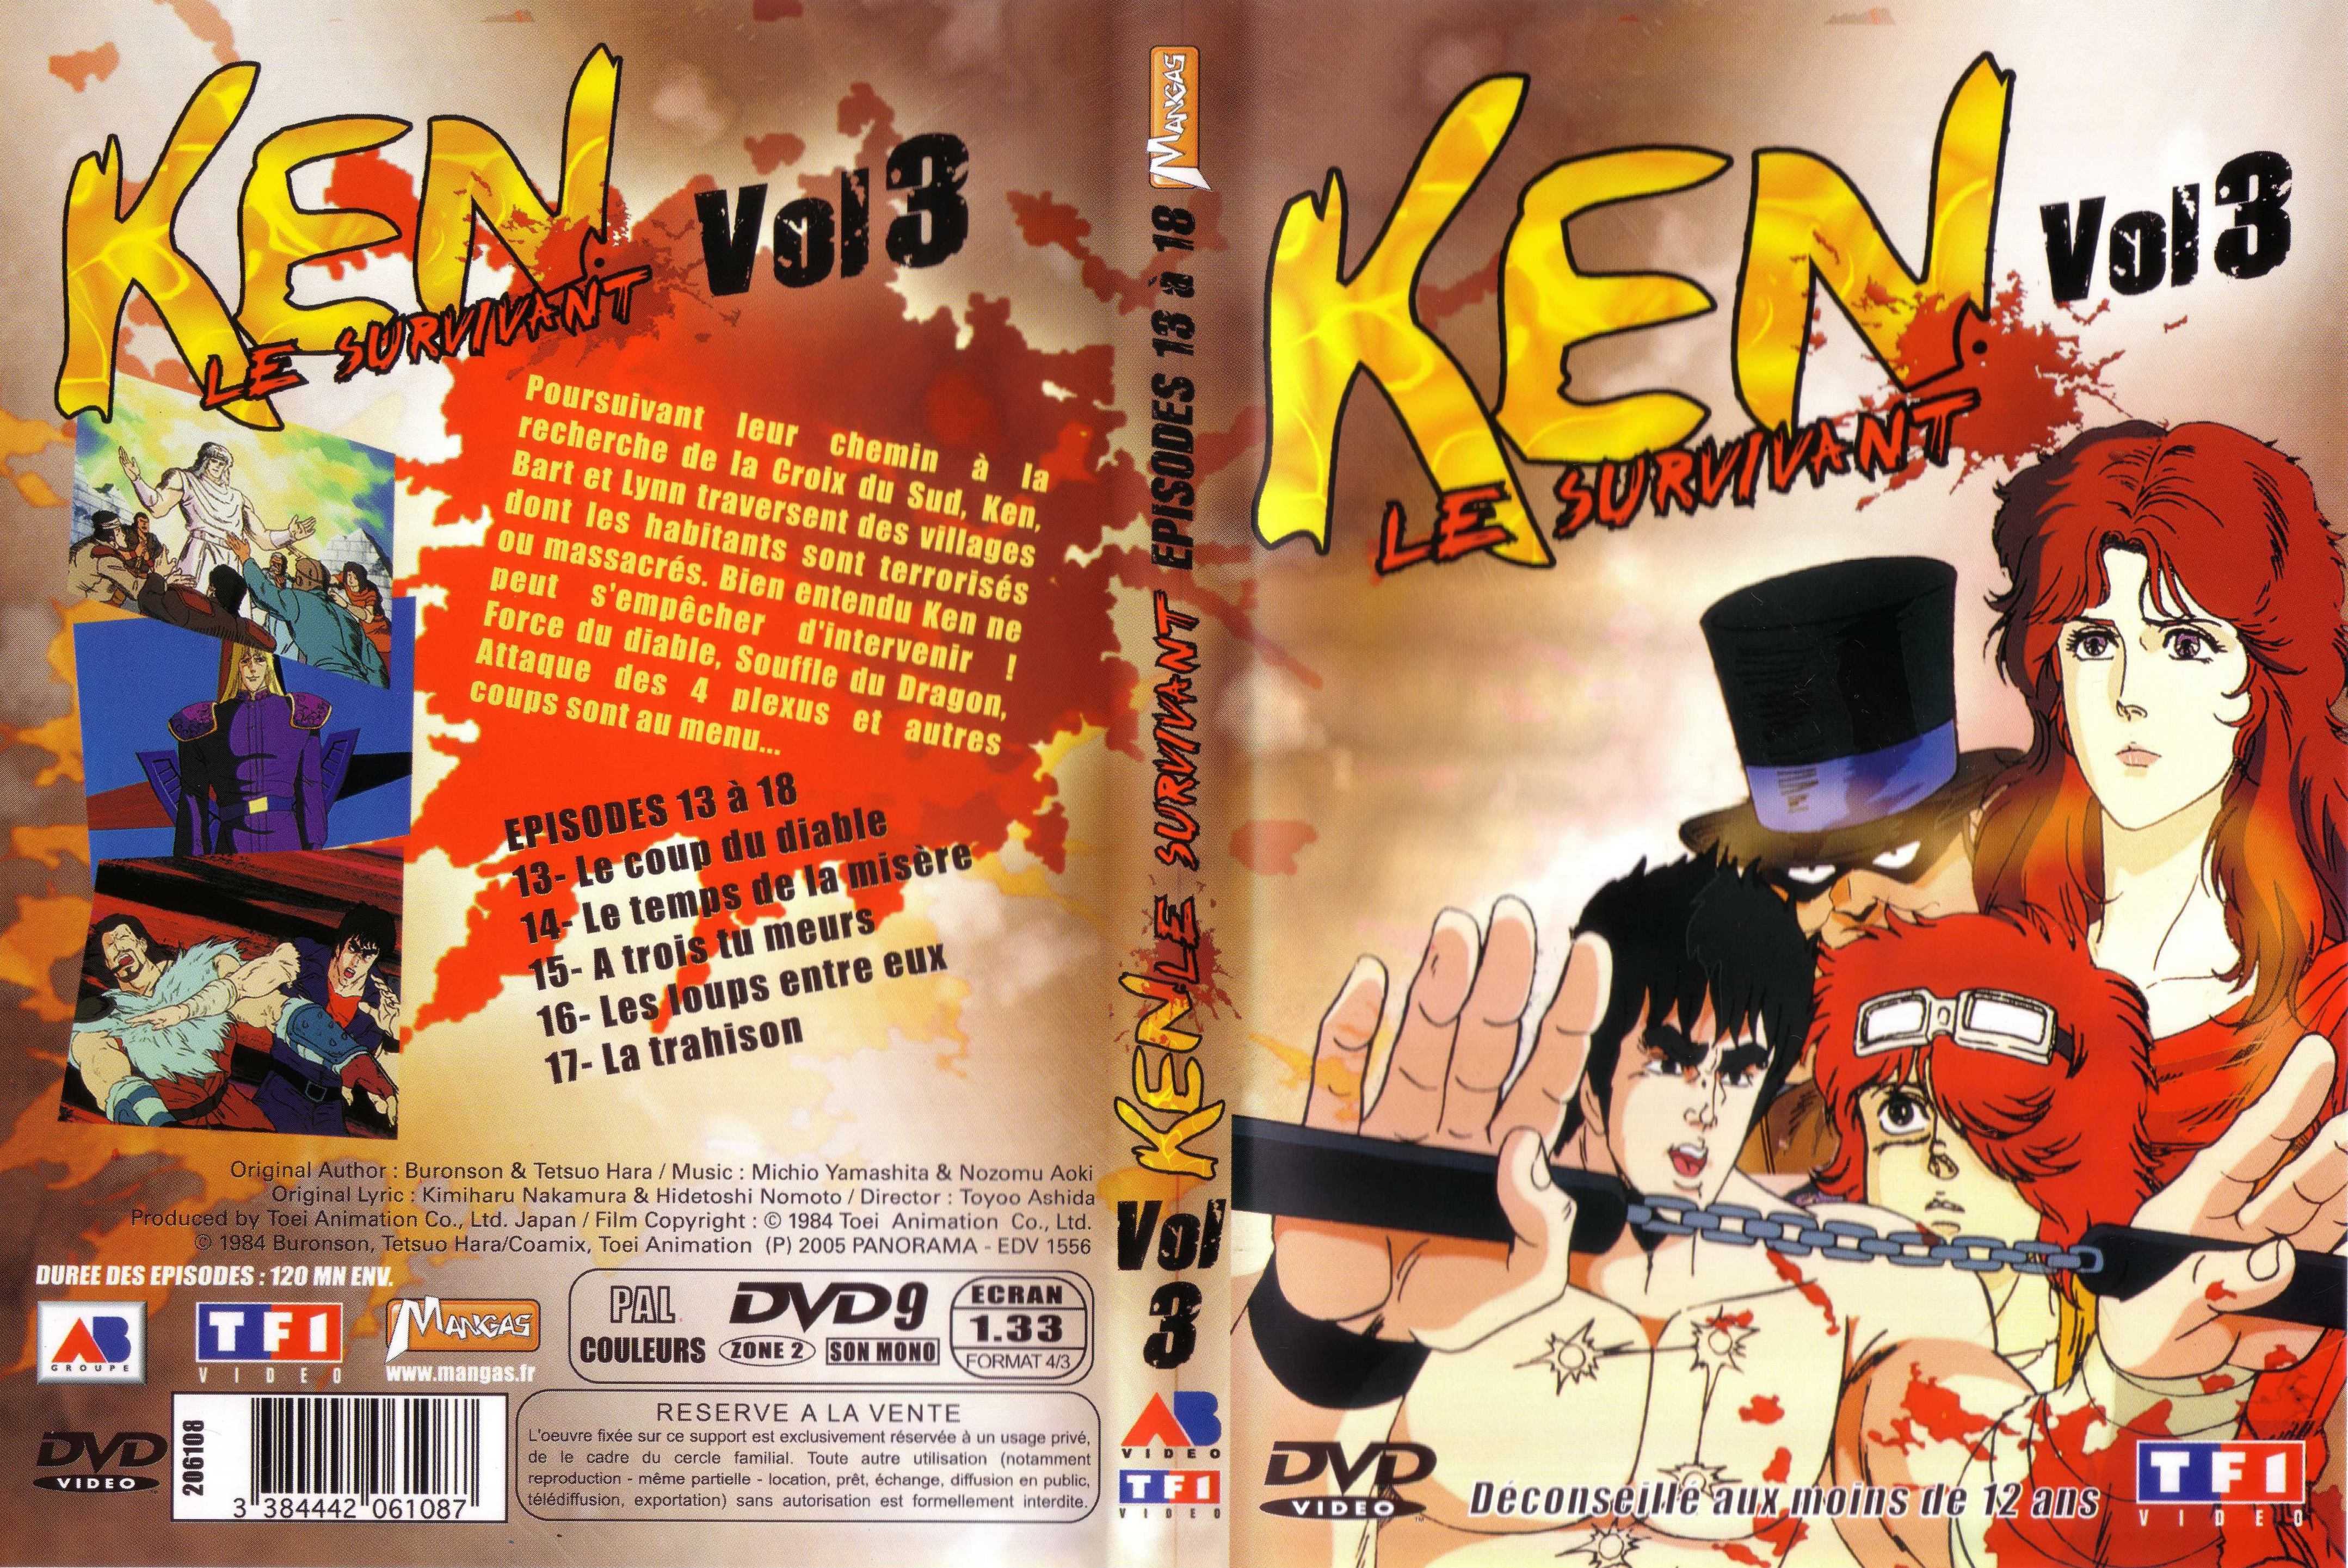 Jaquette DVD Ken le survivant vol 3